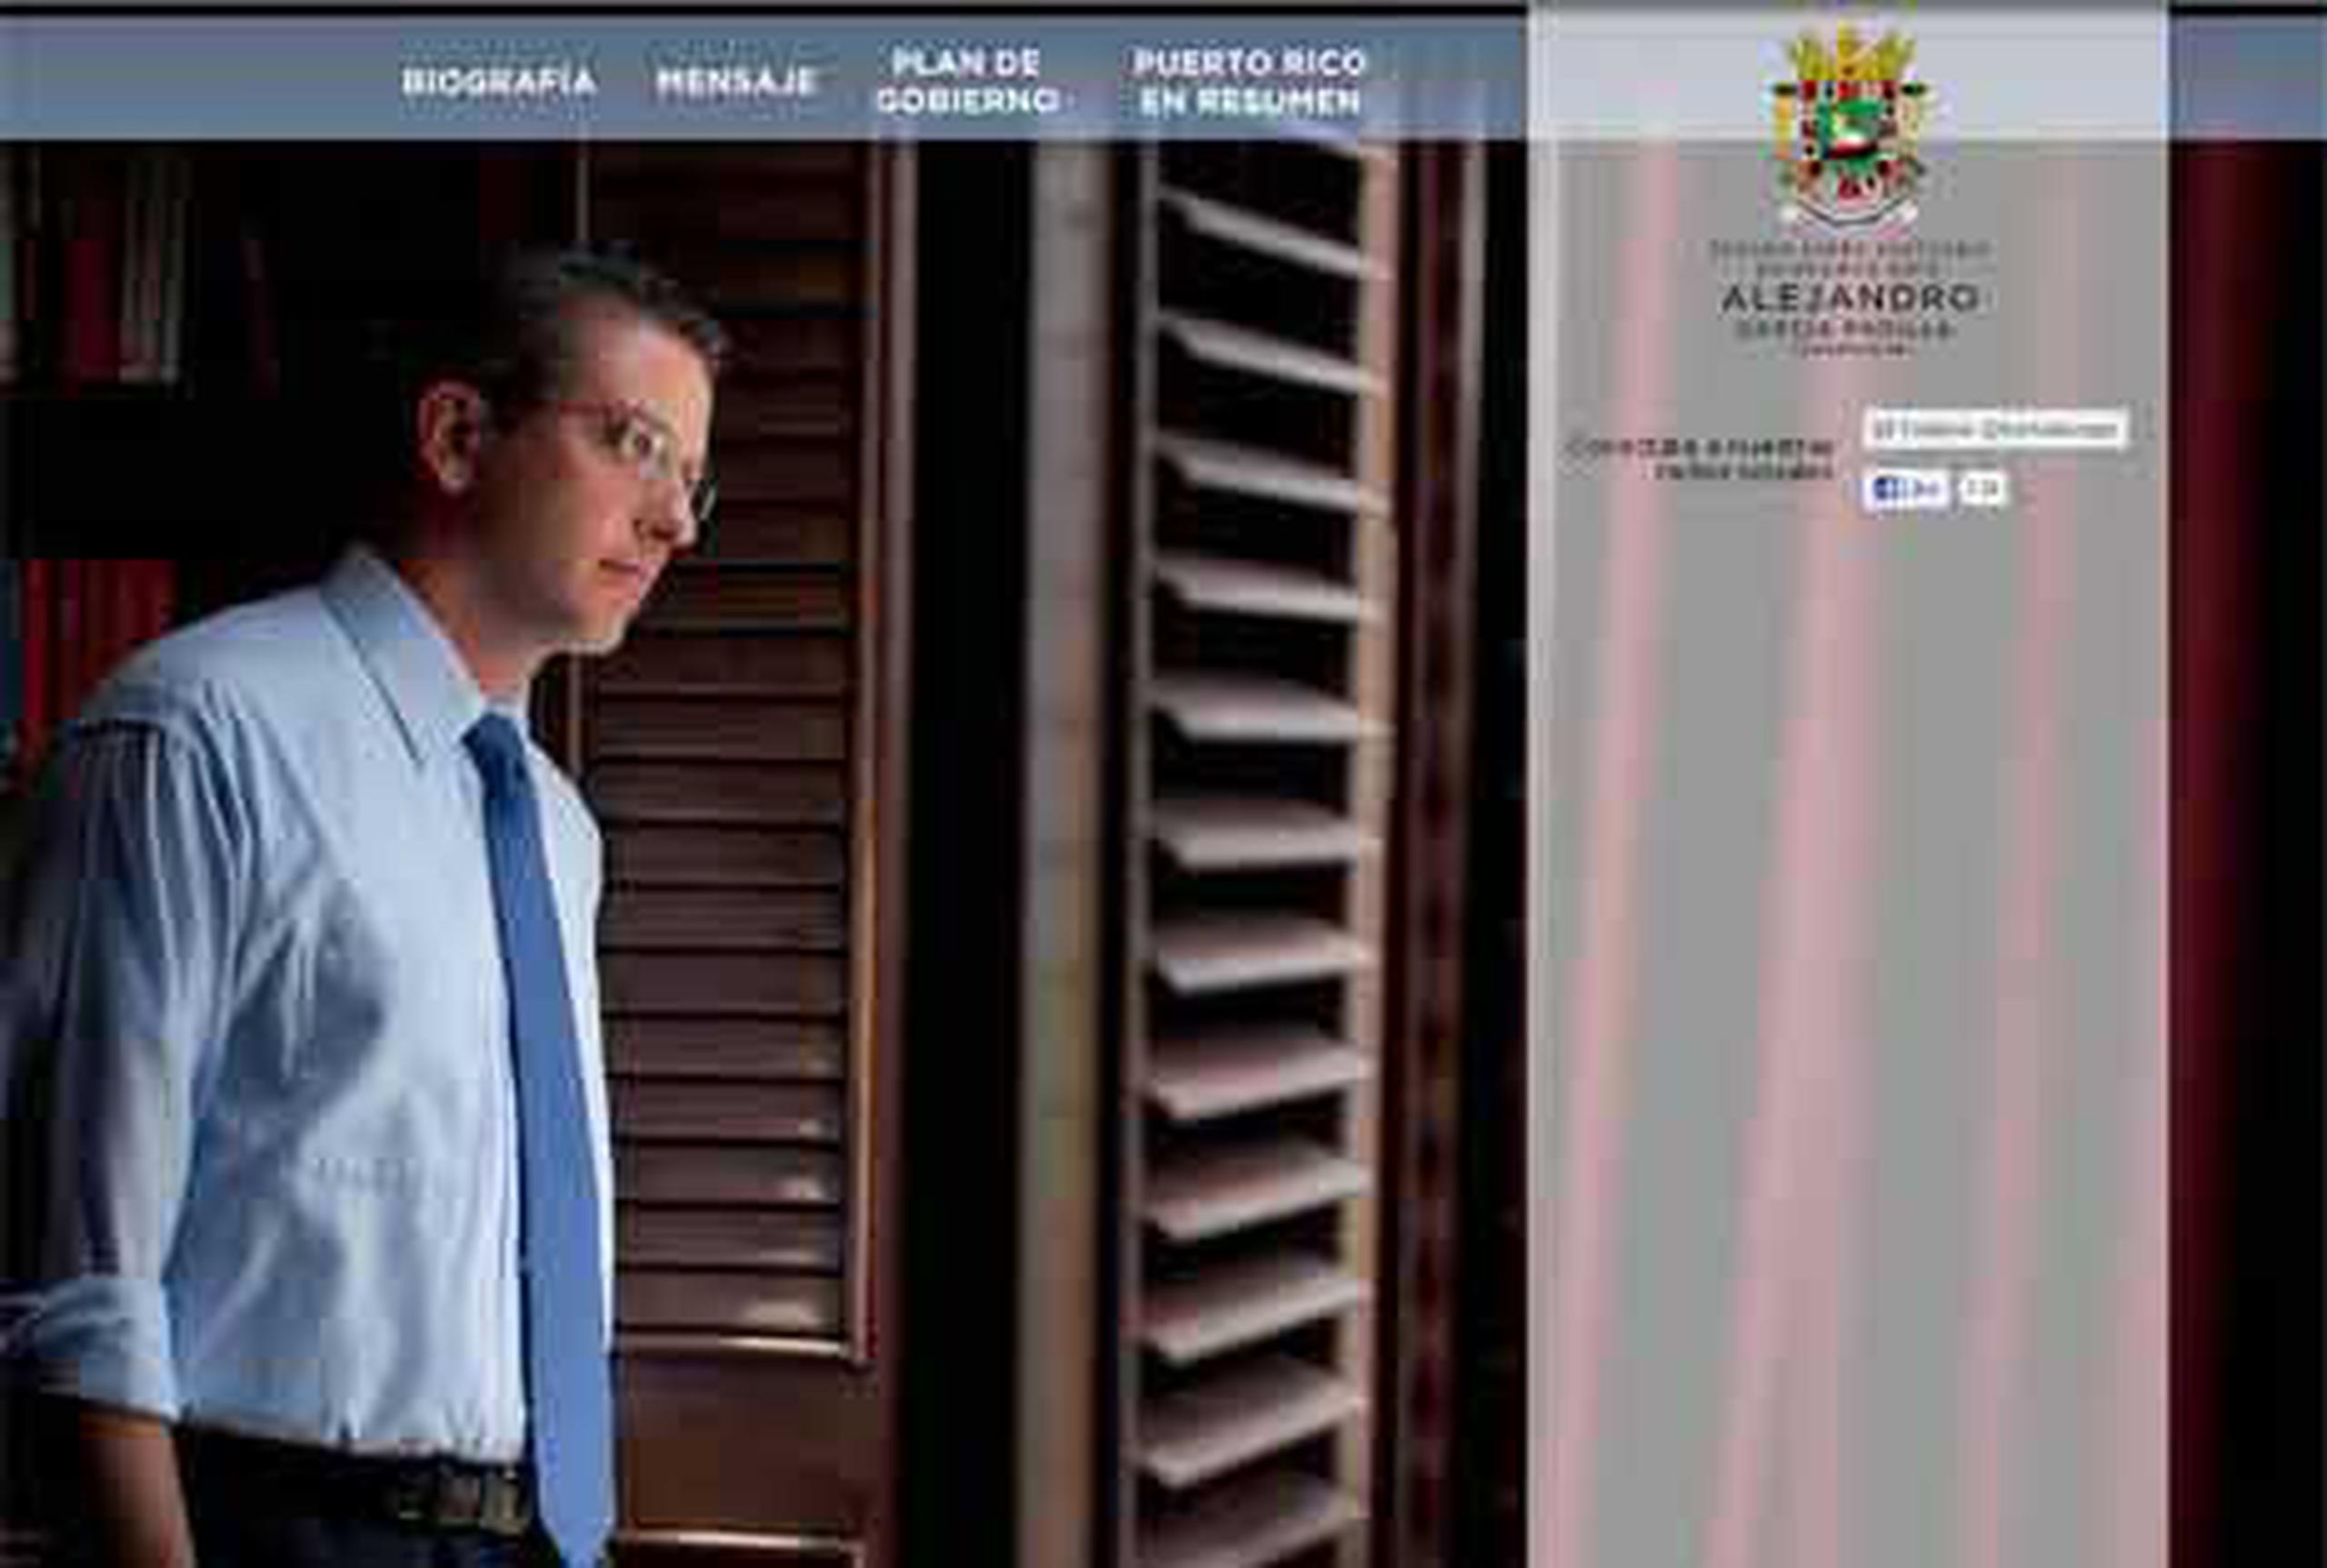 La página de La Fortaleza exhibe ahora una amplia foto del gobernador Alejandro García Padilla. (fortaleza.gobierno.pr)